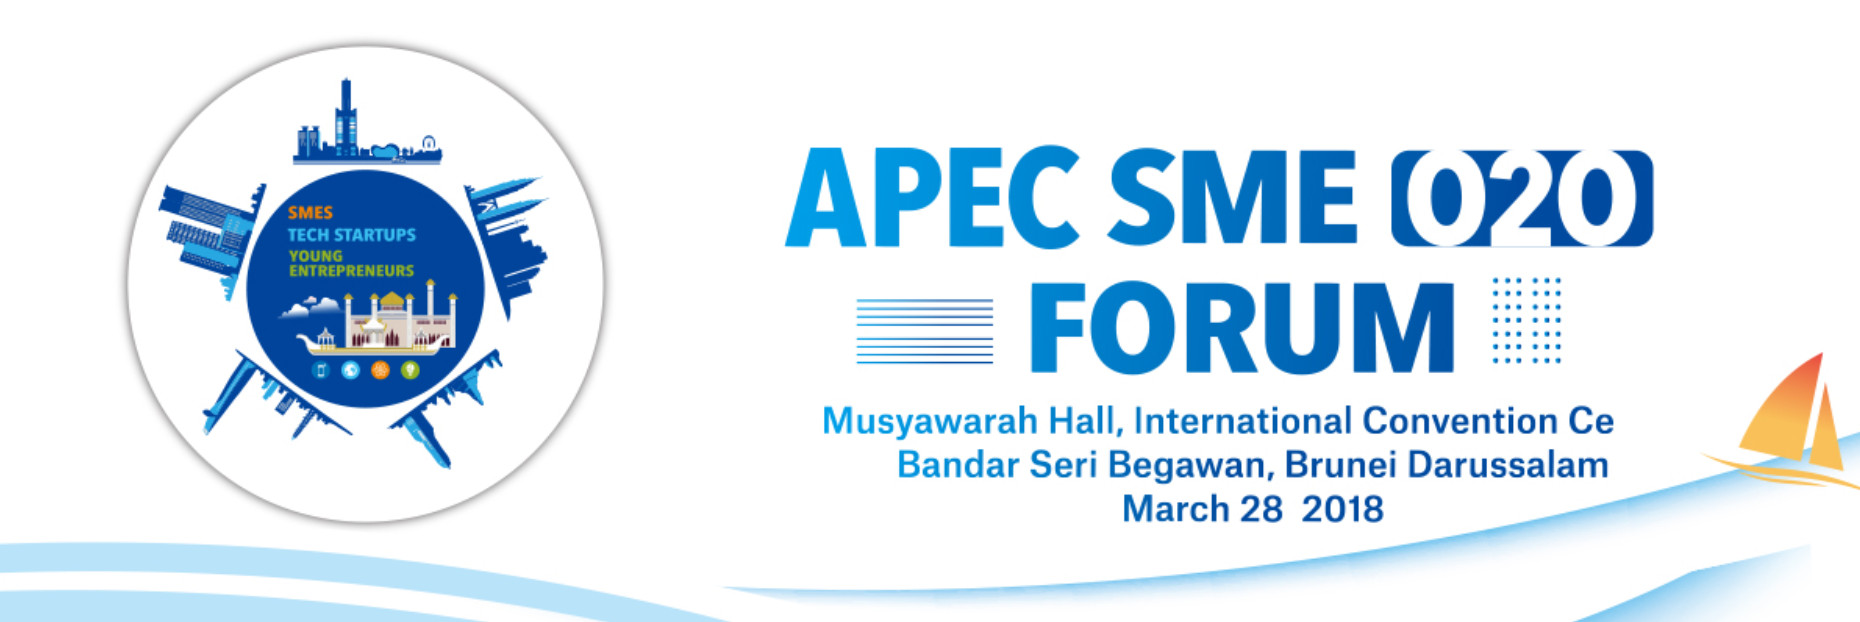 APEC SME O2O Forum - BRUNEI 2018